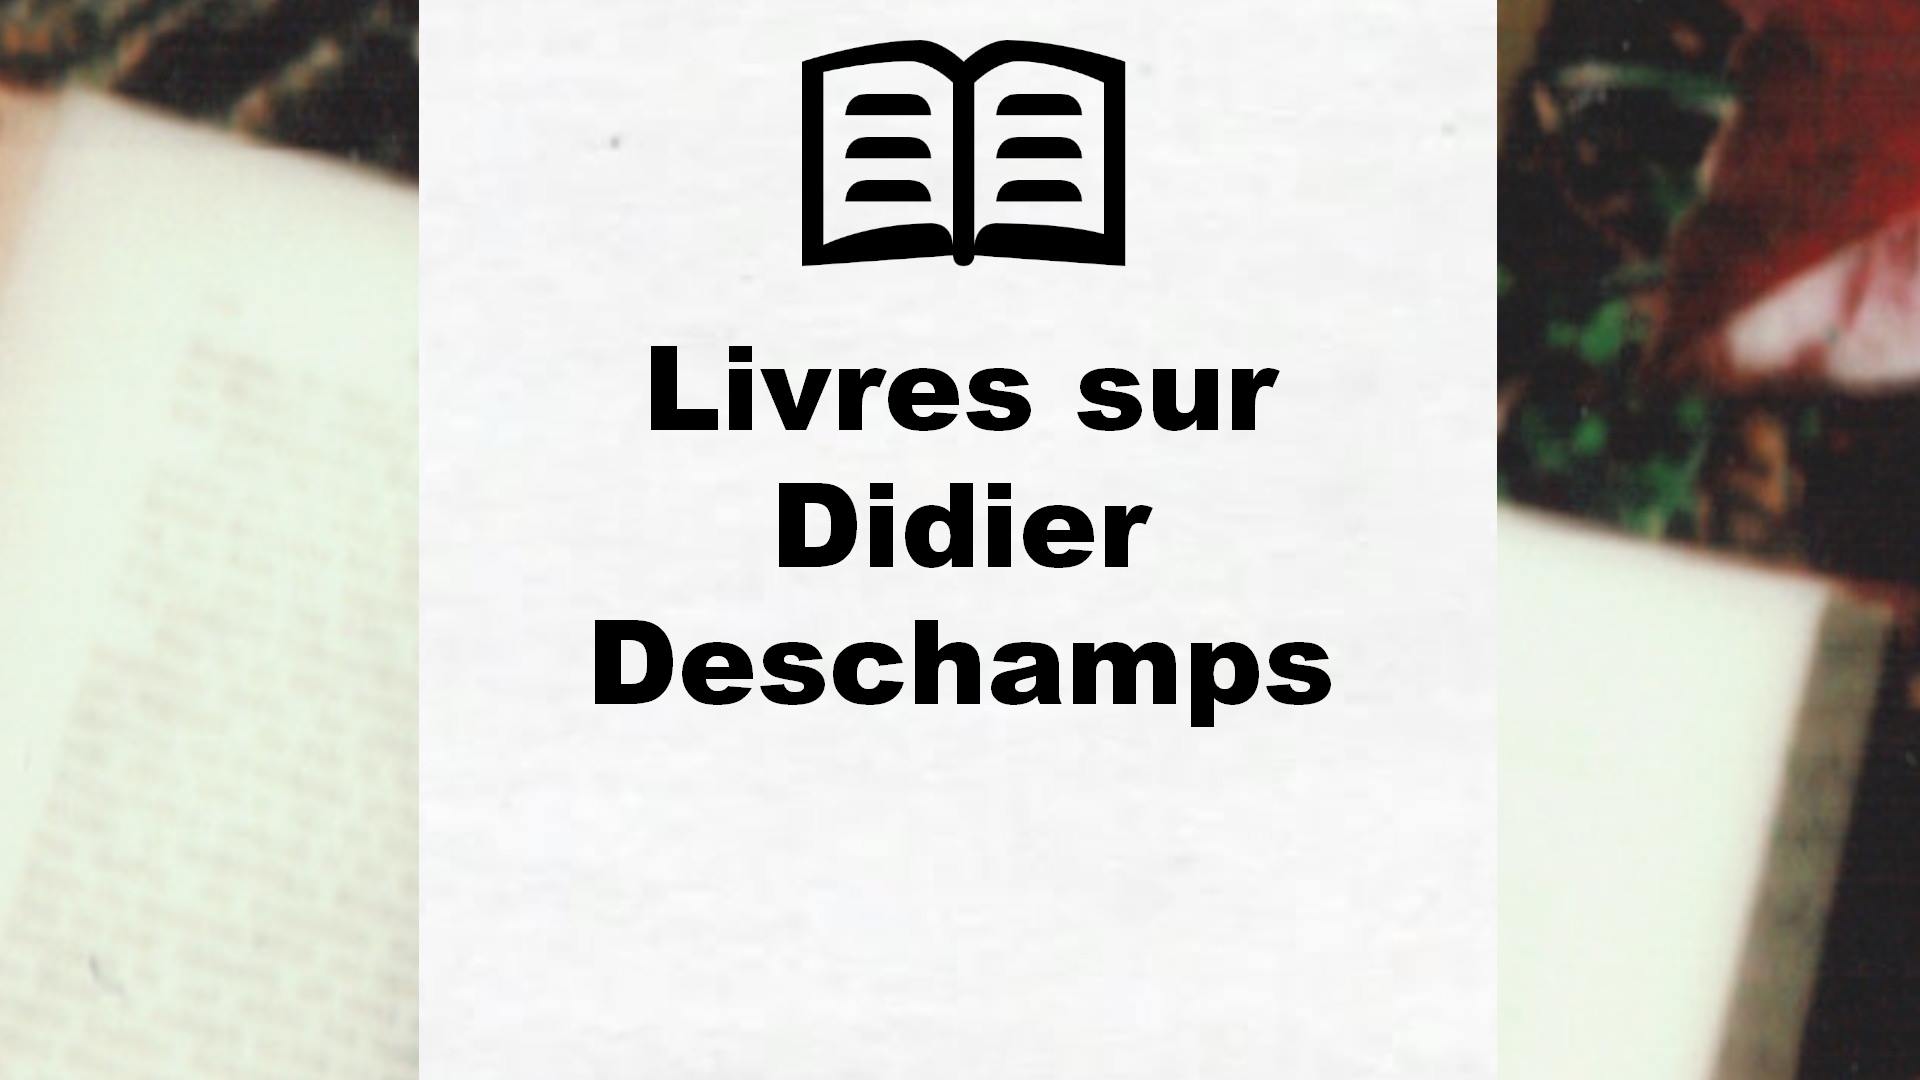 Livres sur Didier Deschamps